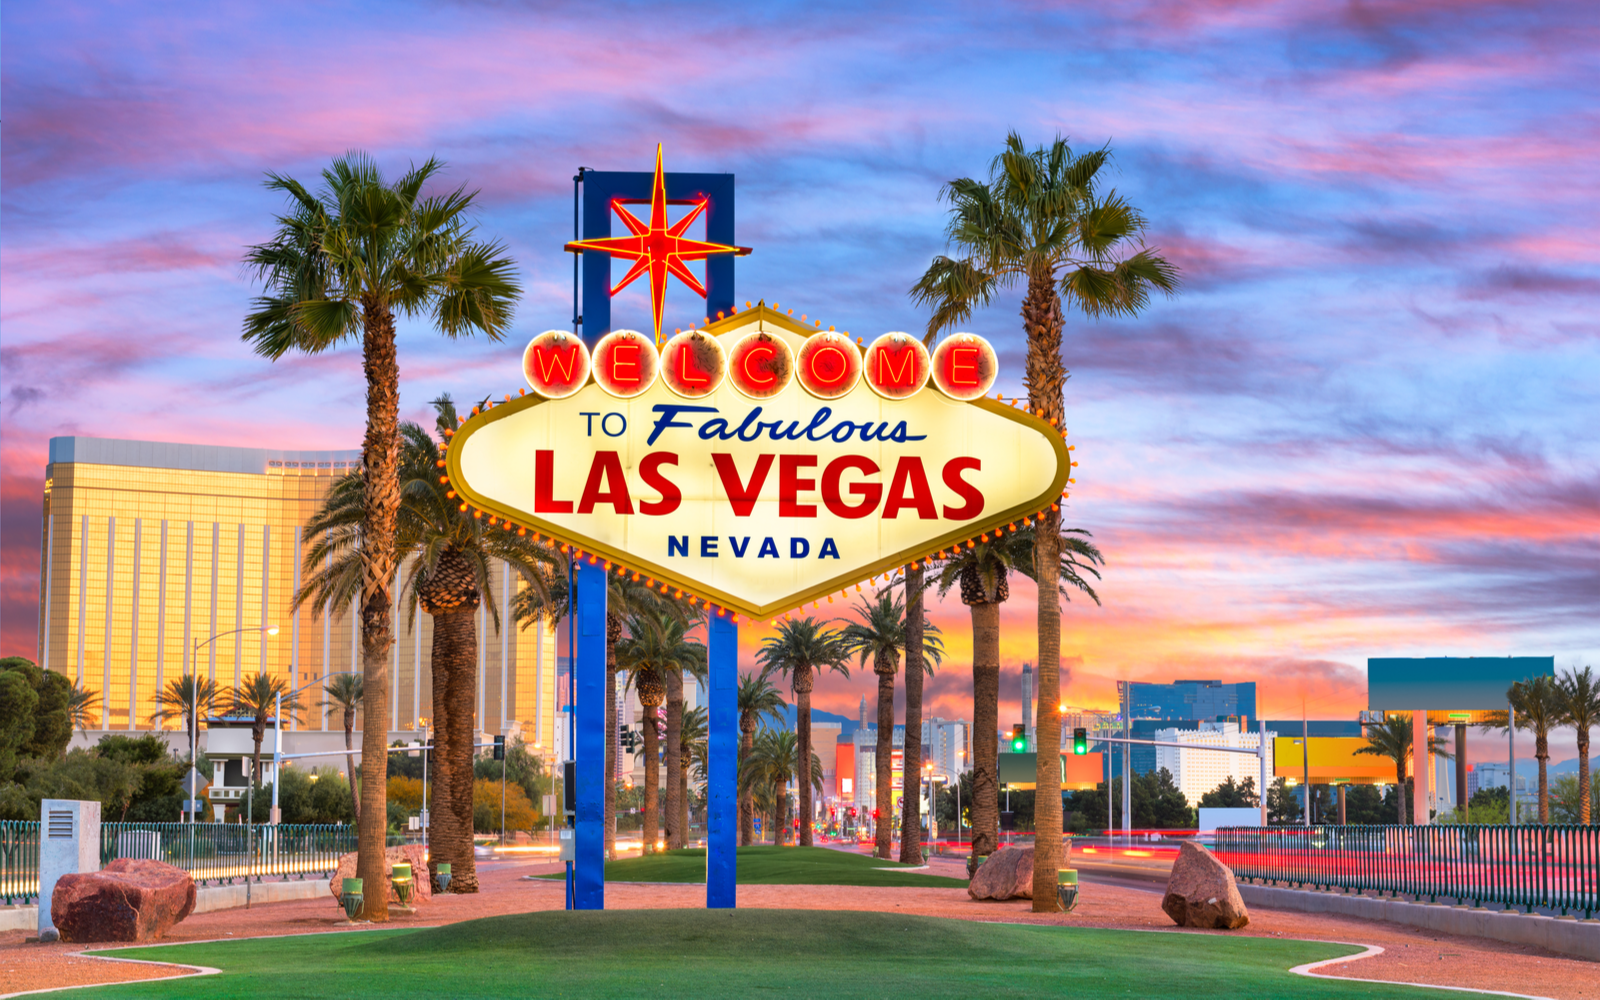 15 Best Hotels in Las Vegas in 2022